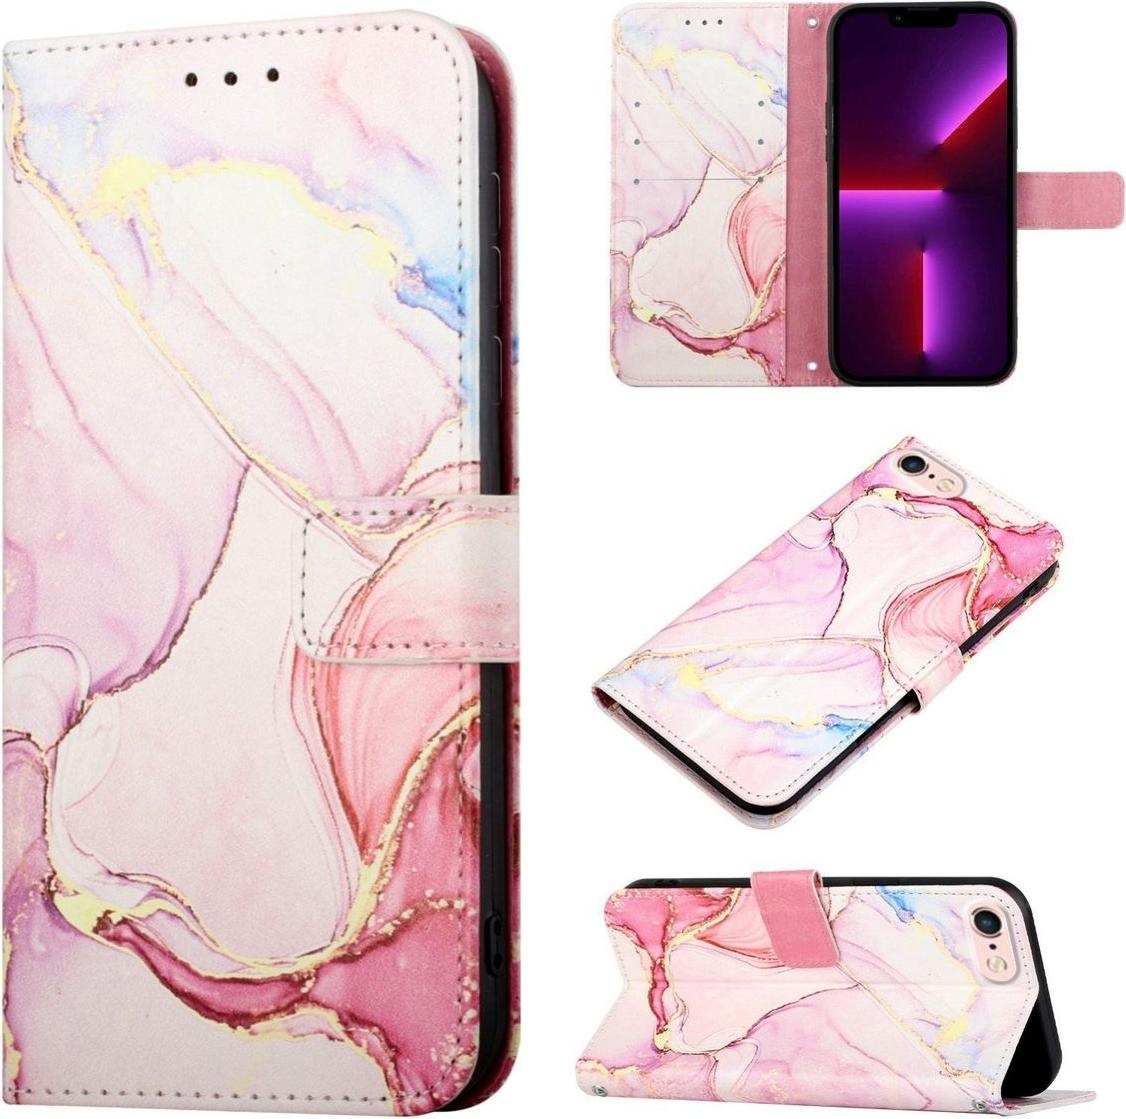 König Design Hülle Handy Schutz für Apple iPhone SE 2022 Case Cover Tasche Wallet 360 Grad (iPhone SE (2022), iPhone SE (2020), iPhone 8, iPhone 7), Smartphone Hülle, Mehrfarbig